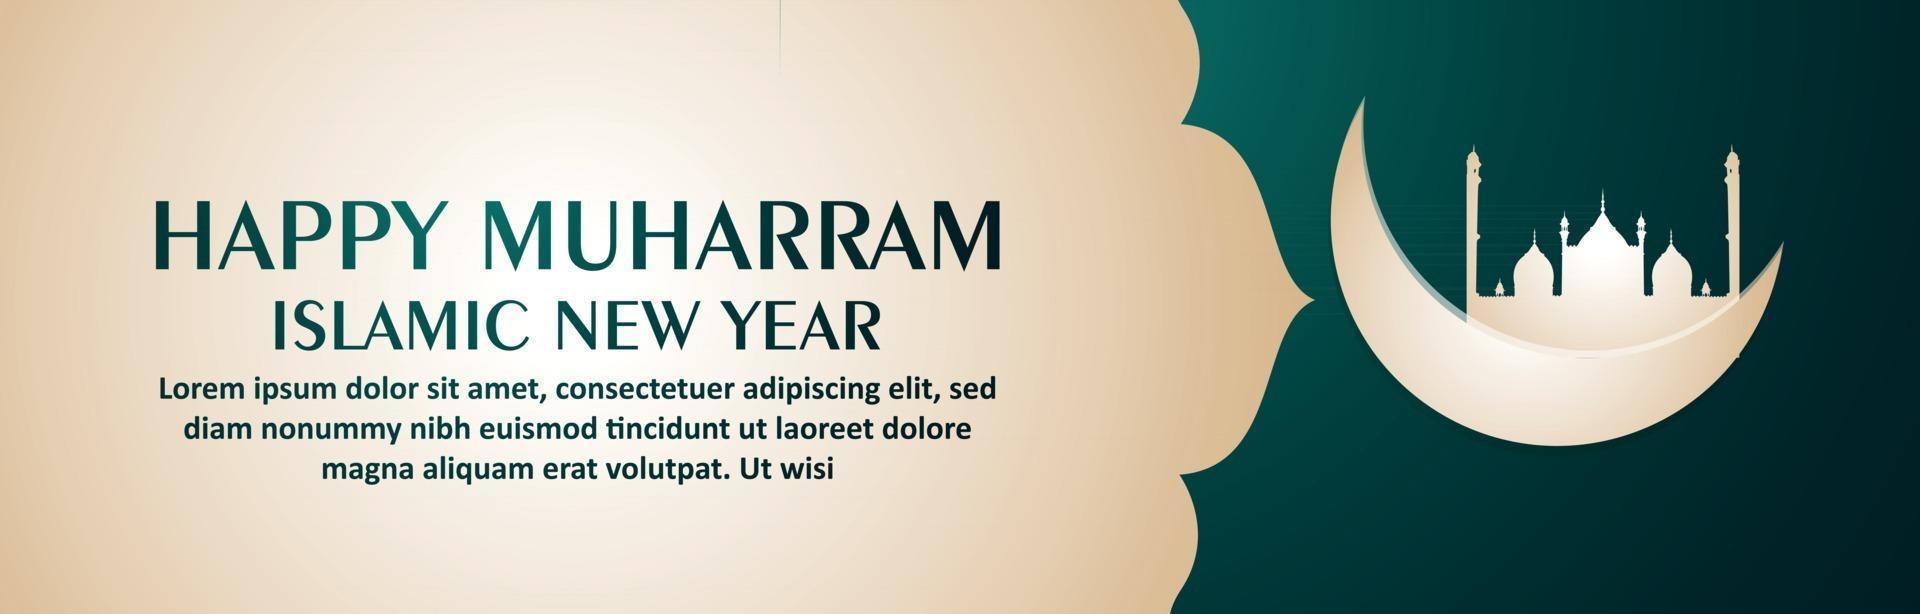 Frohes Muharram islamisches Neujahrsfeierbanner oder -kopf vektor